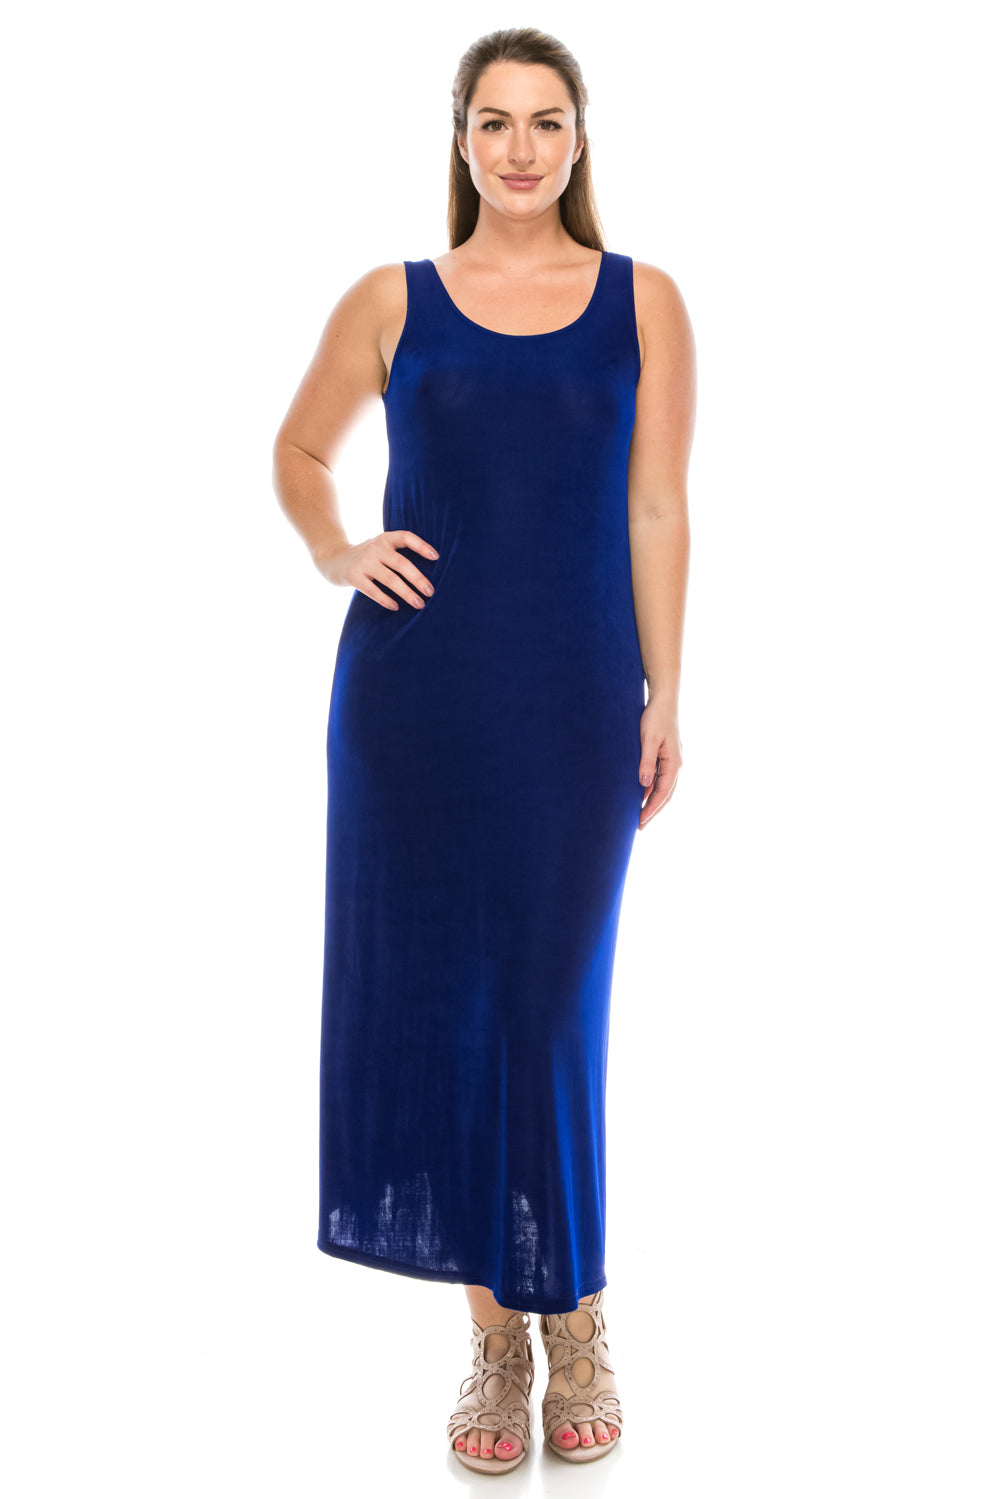 Jostar Women's Non Iron Long Tank Dress in Plus Size, 700AY-TX - Jostar Online